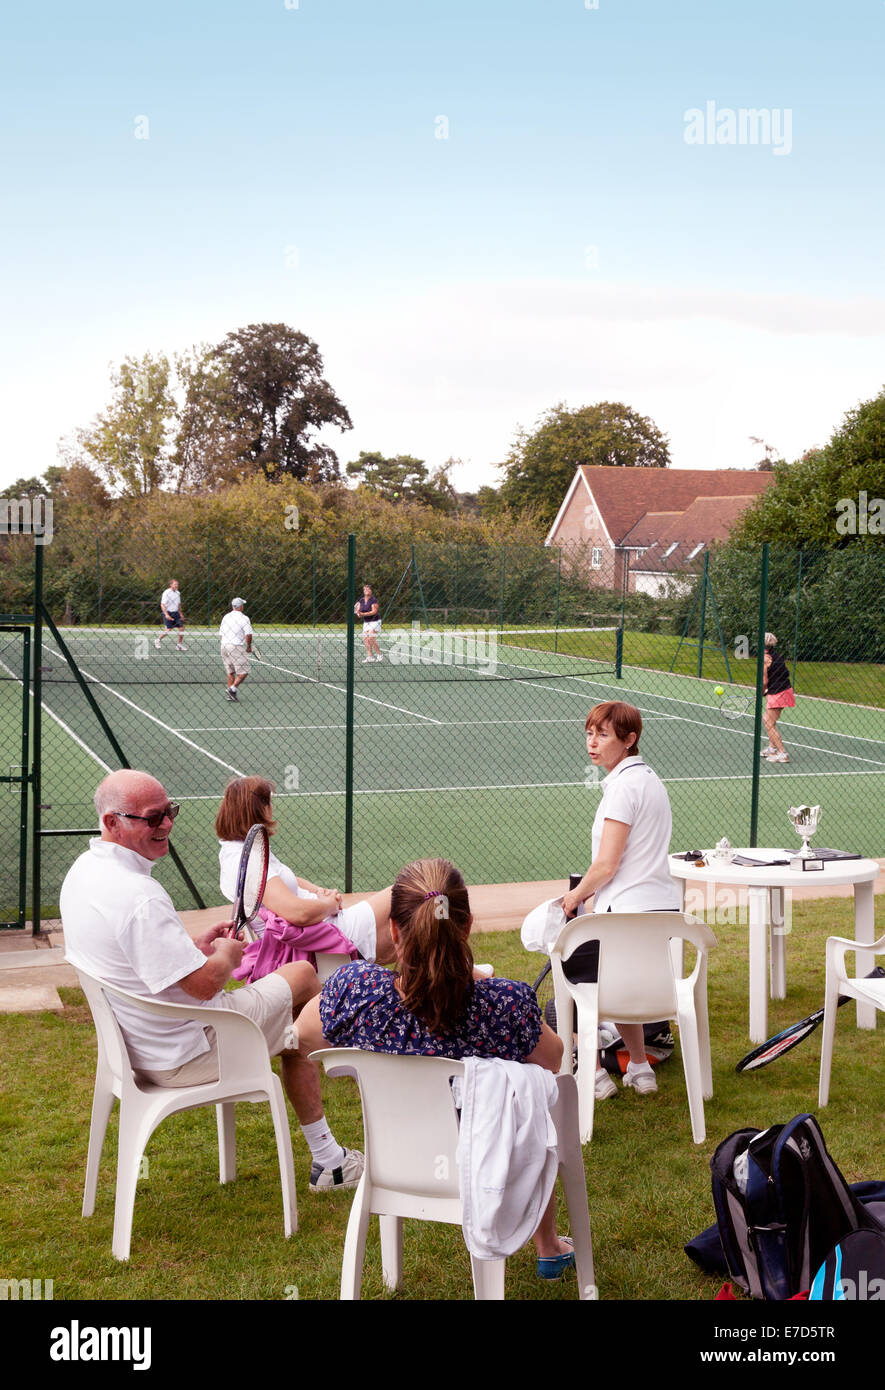 Les personnes bénéficiant d'un après-midi à jouer au tennis à l'URC Club de tennis, un club de tennis local, Newmarket, Suffolk, Angleterre, Royaume-Uni Banque D'Images